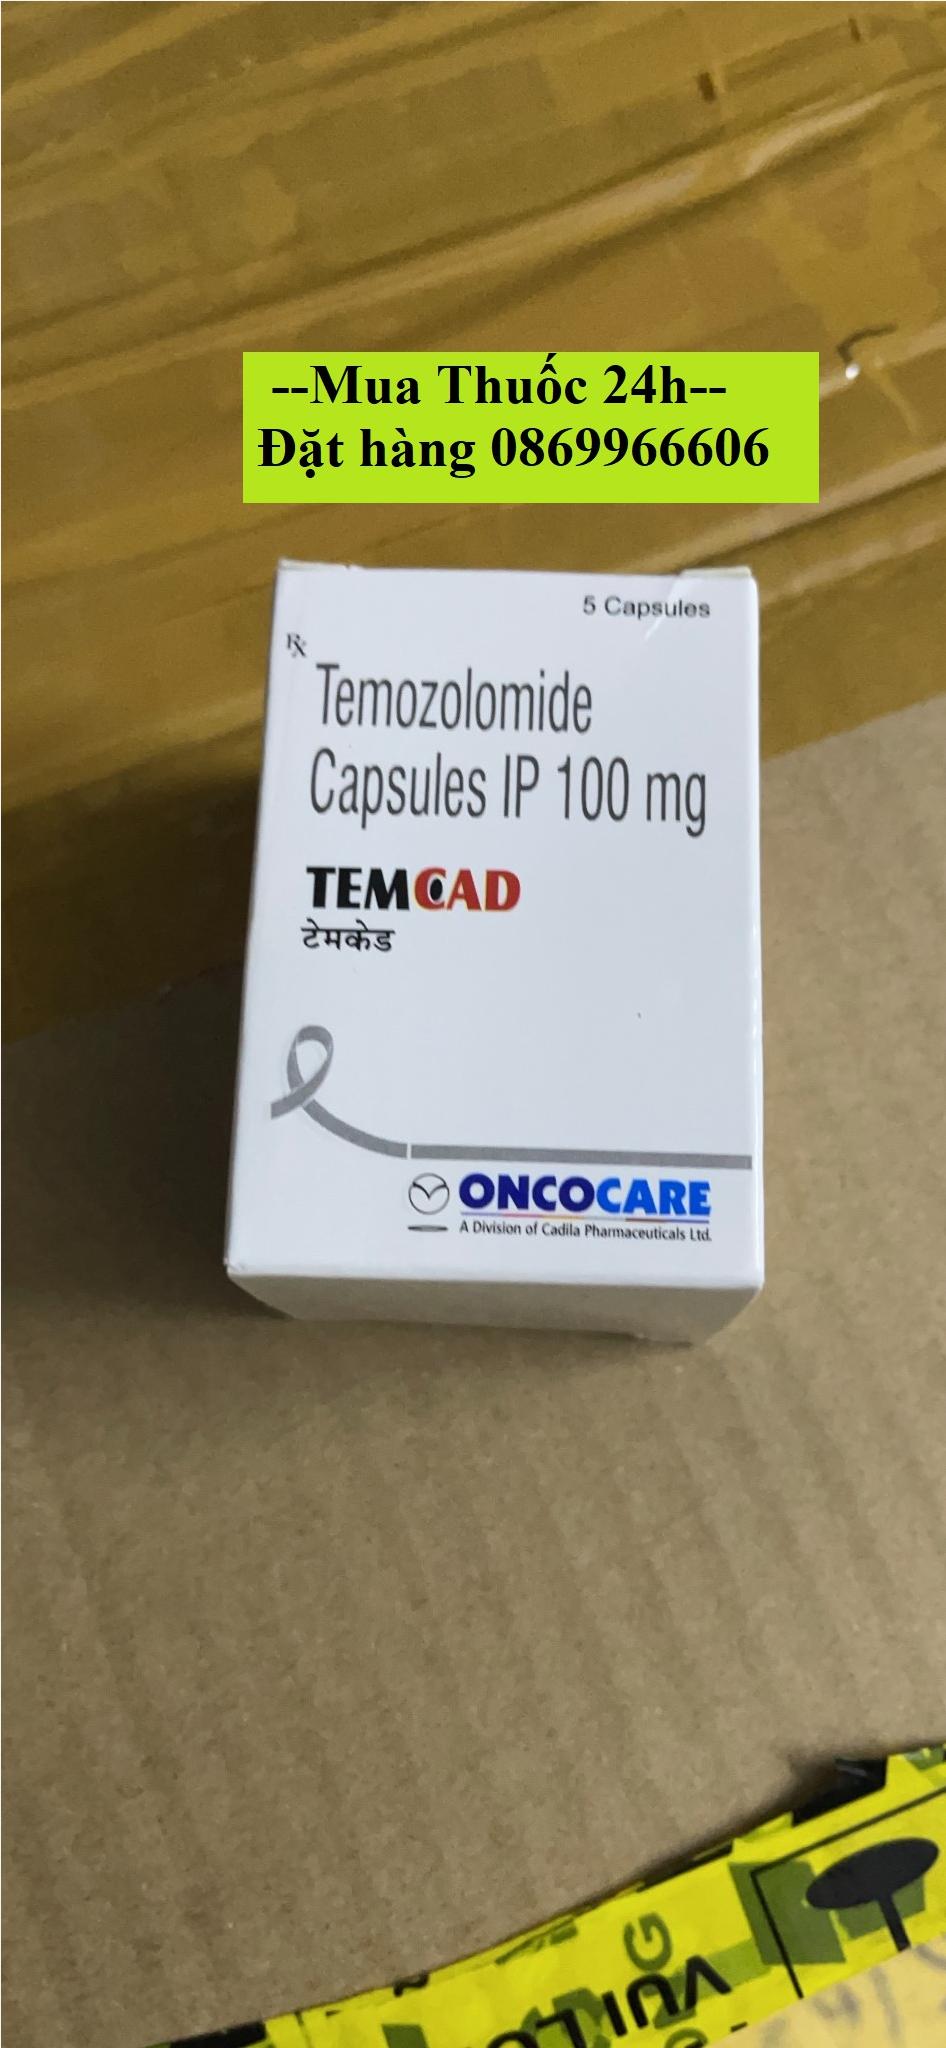 Thuốc Temcad Temozolomide 100mg giá bao nhiêu mua ở đâu?